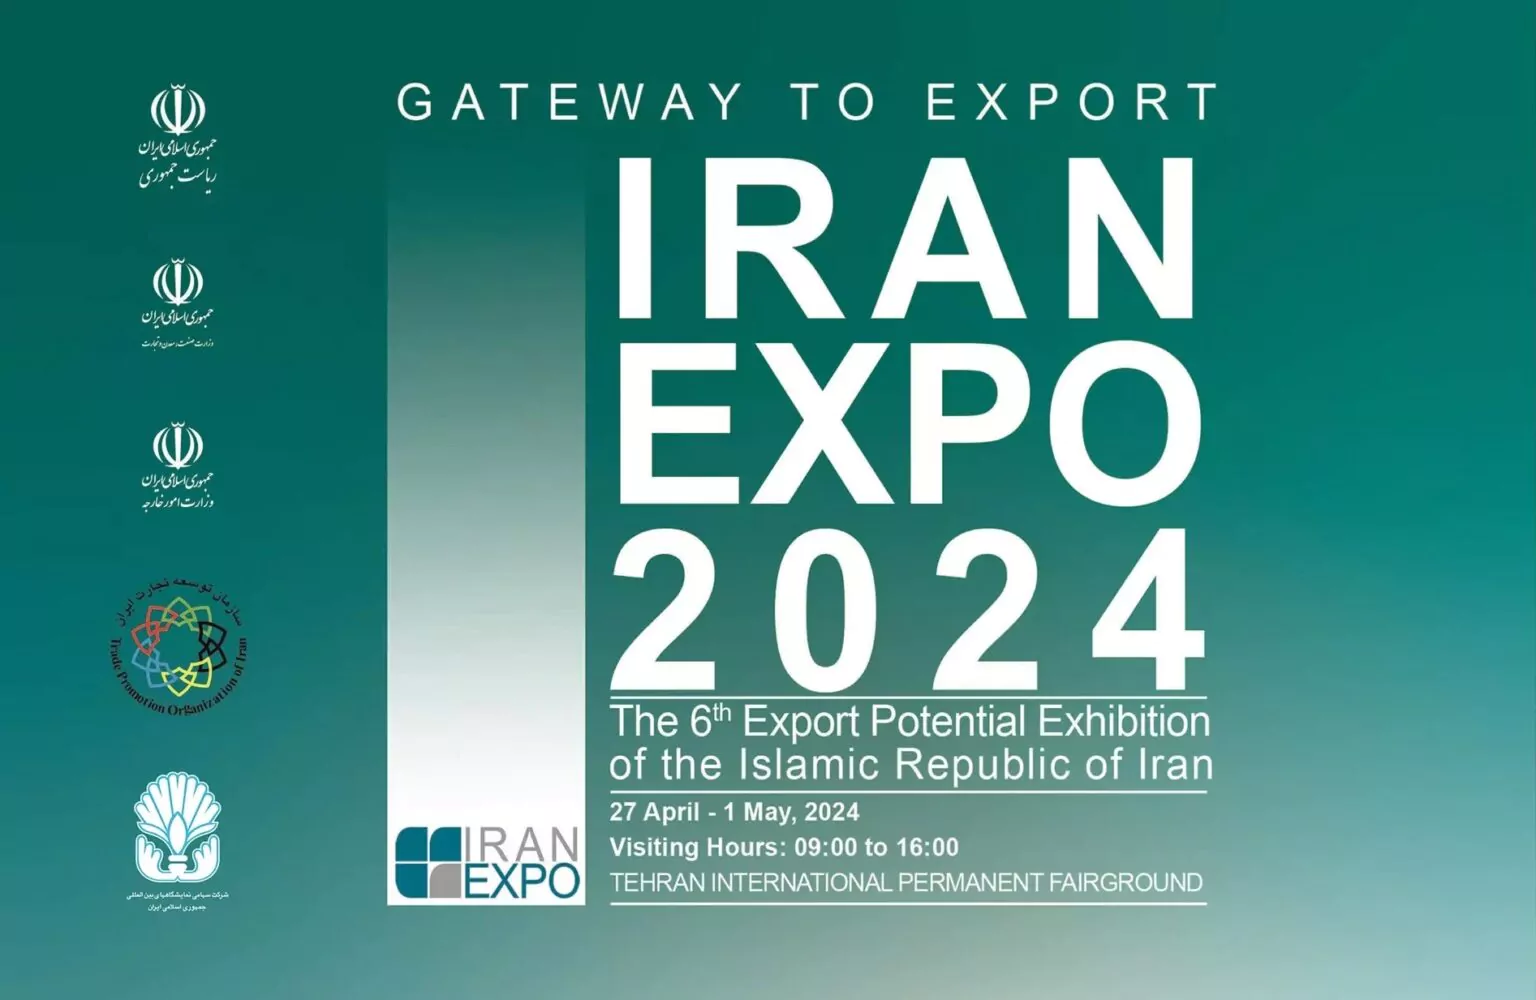 لبنان يشارك في معرض إيران إكسبو 2024 في طهران